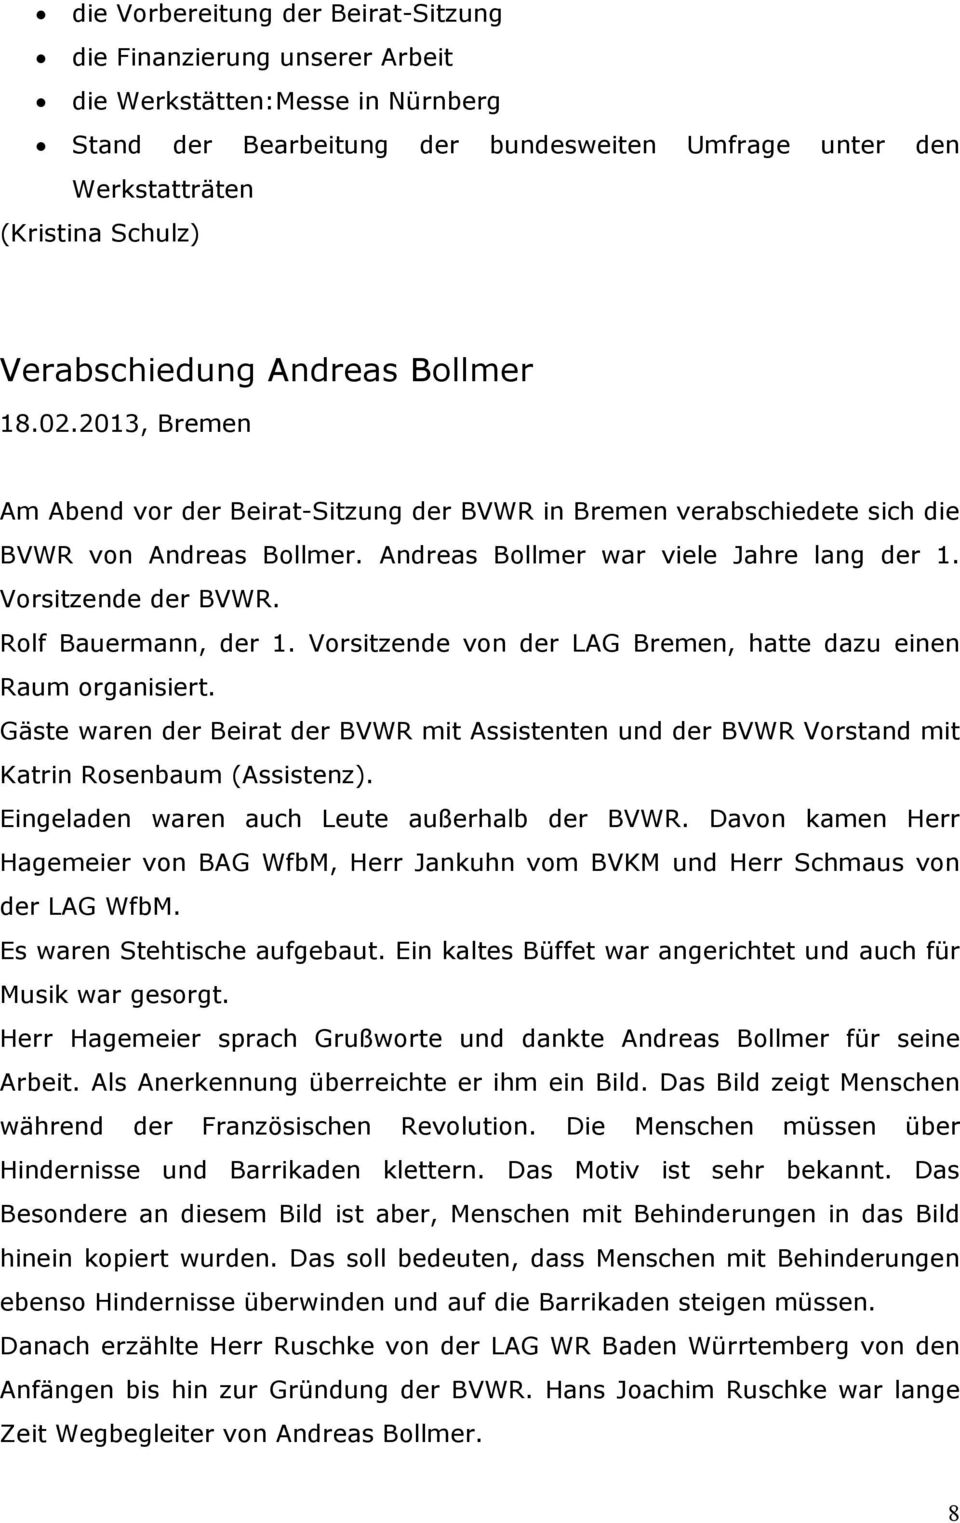 Vorsitzende der BVWR. Rolf Bauermann, der 1. Vorsitzende von der LAG Bremen, hatte dazu einen Raum organisiert.